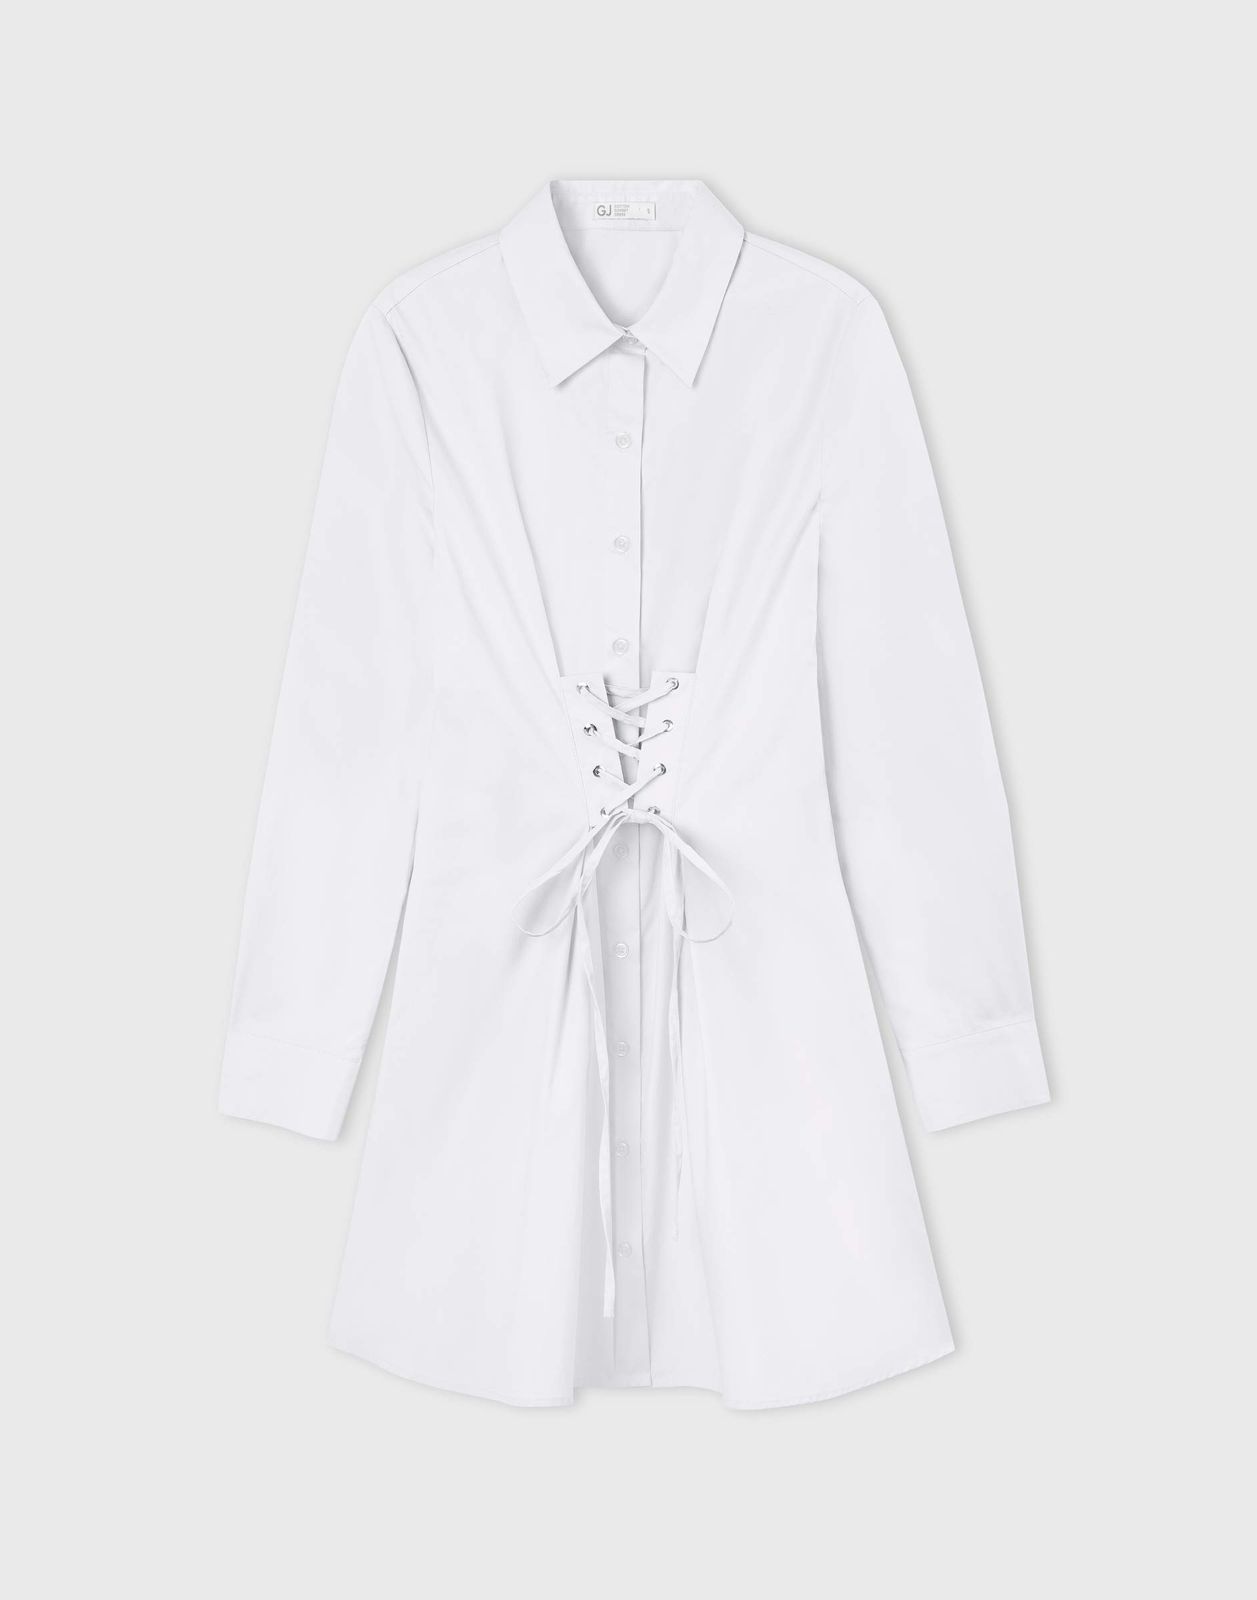 Платье женское Gloria Jeans GDR028833 белое XS (38-40)